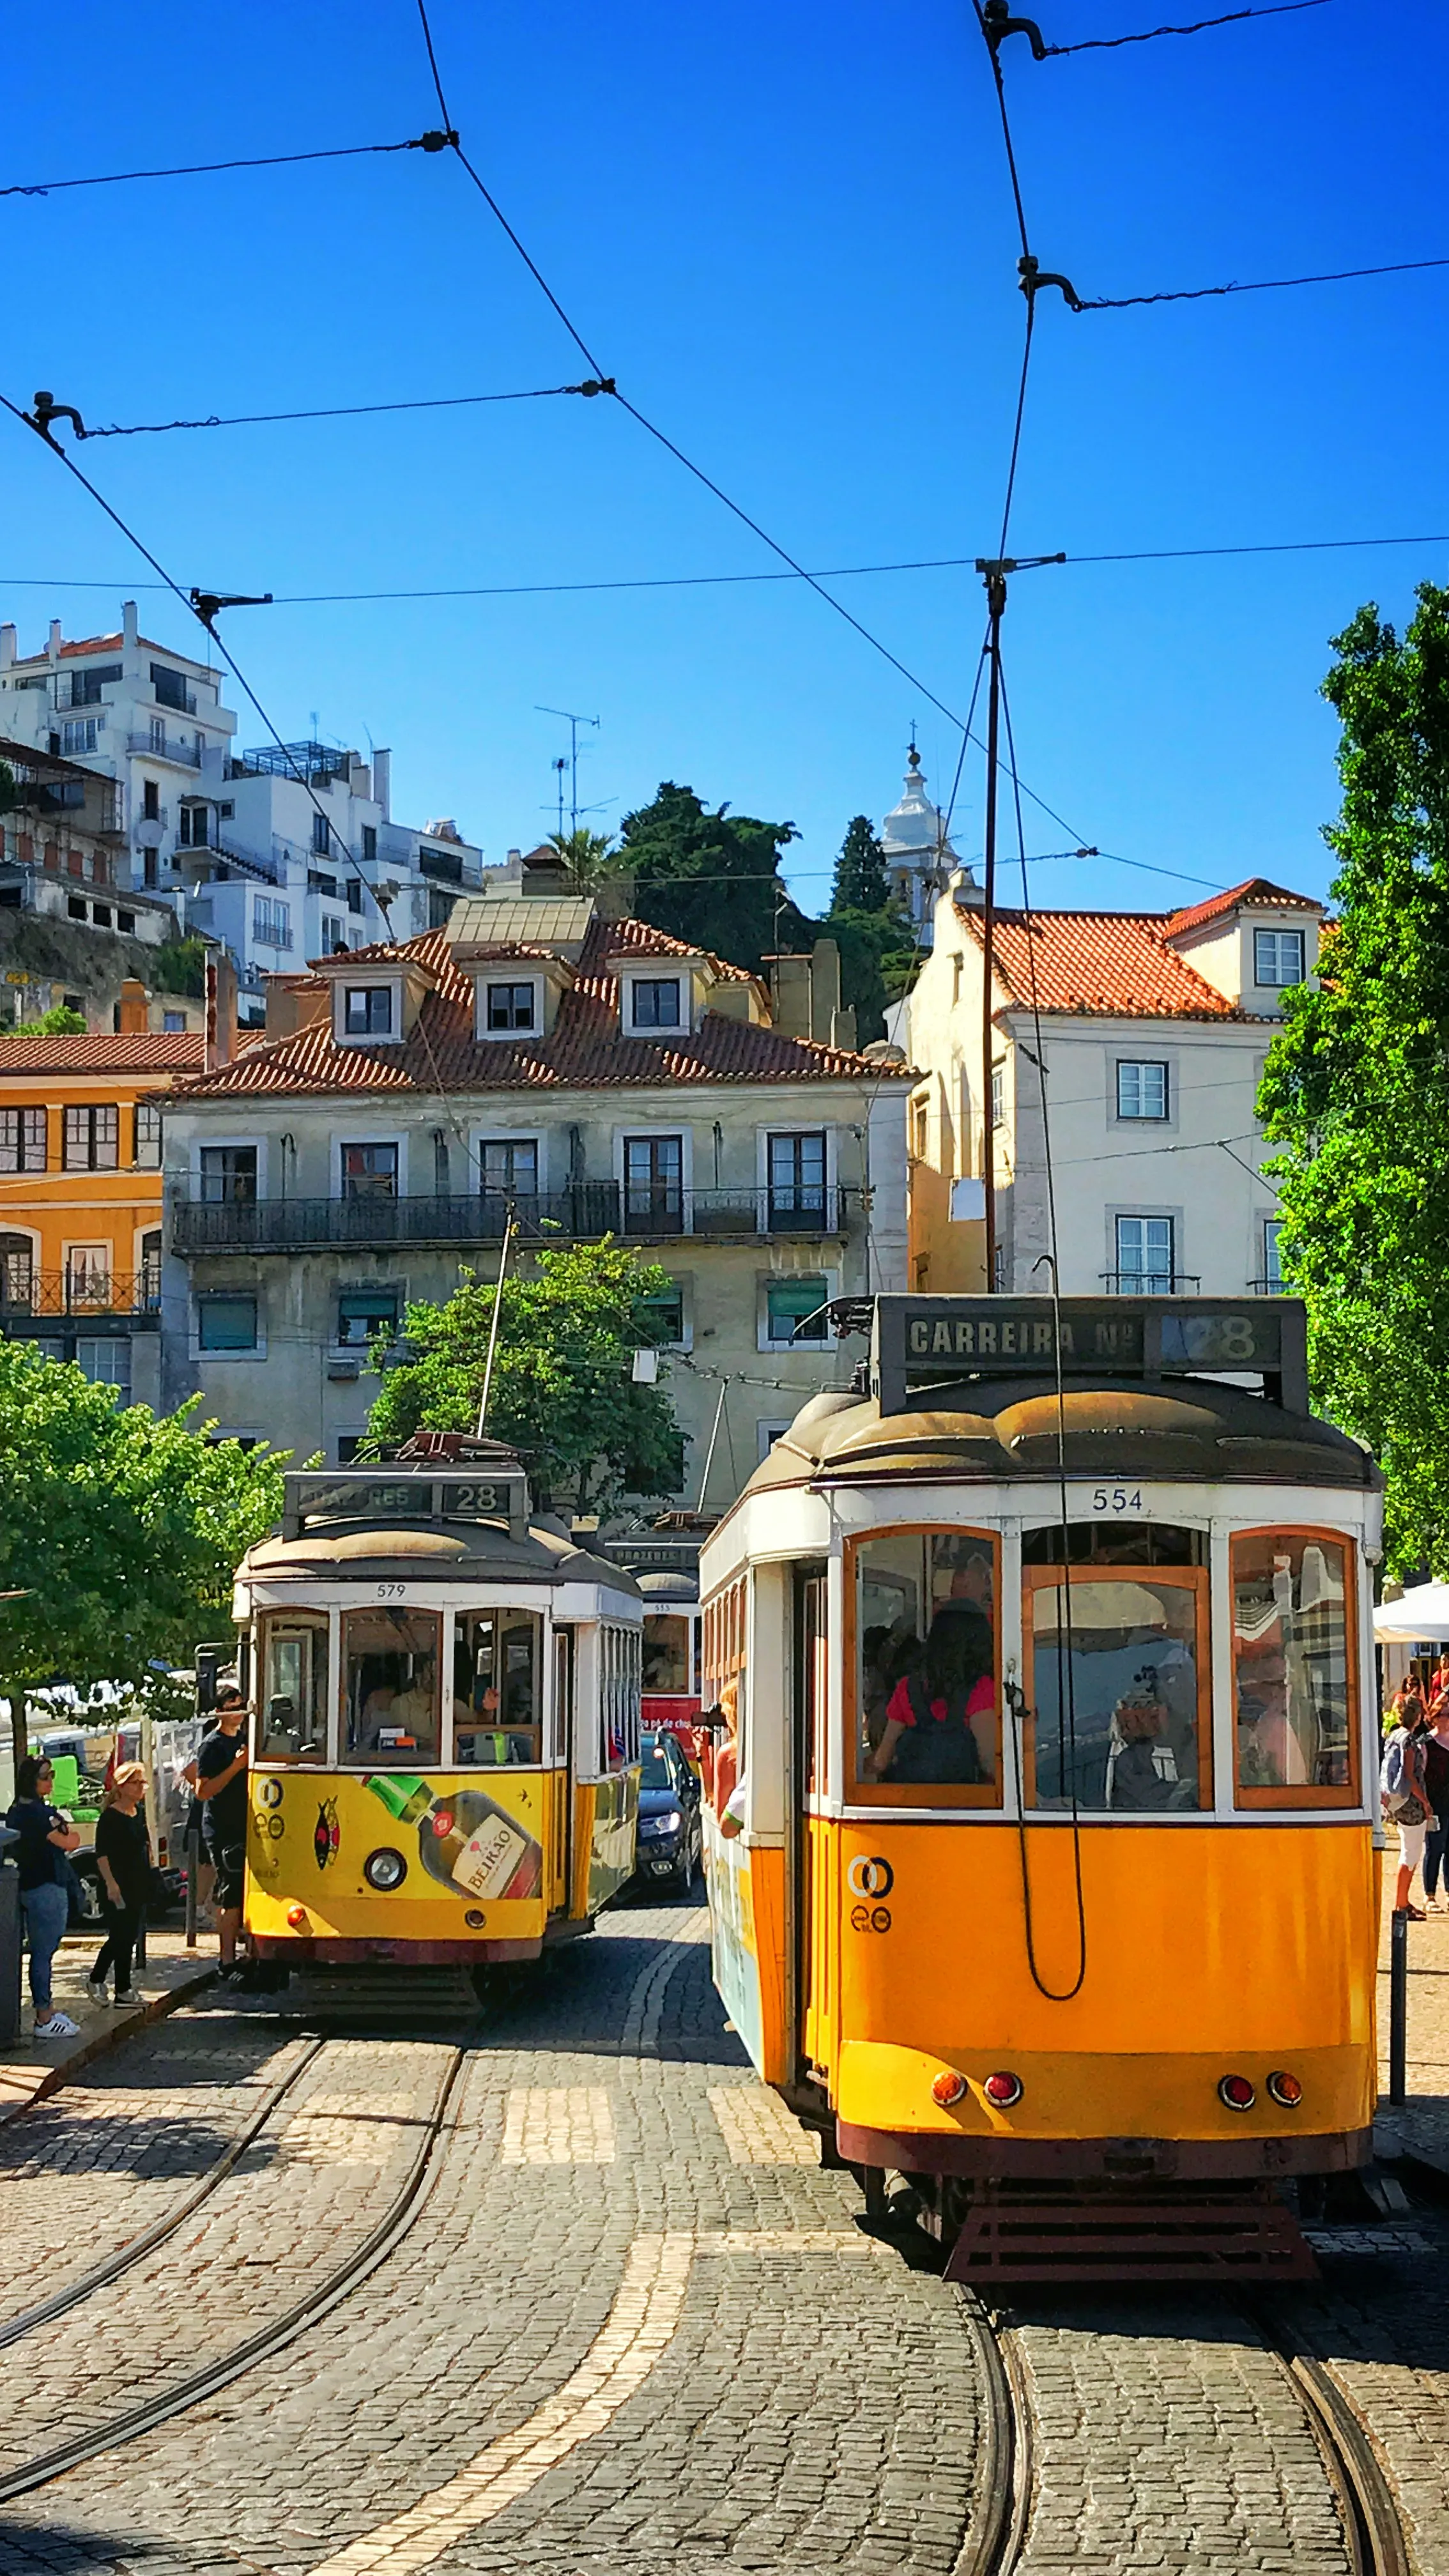 Лиссабон вдвое поднимет налог для туристов